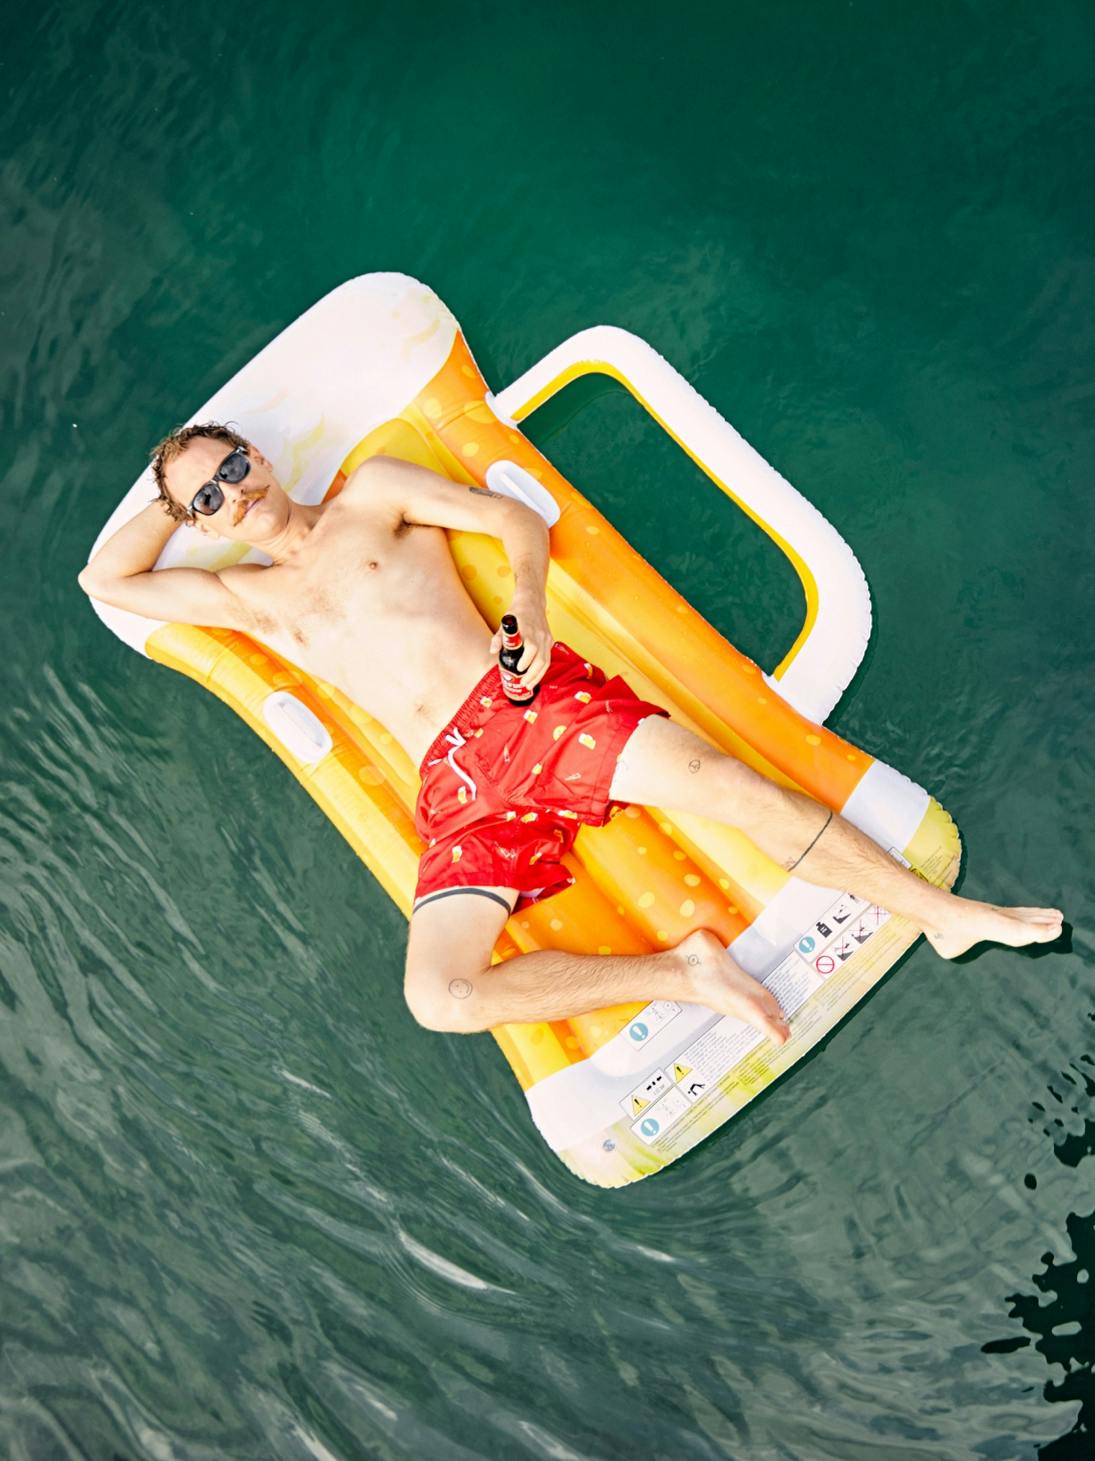 Junger Mann in Badehose von oben fotografiert liegt auf einer Luftmatratze in Form eines Bierglases © gm gobiq